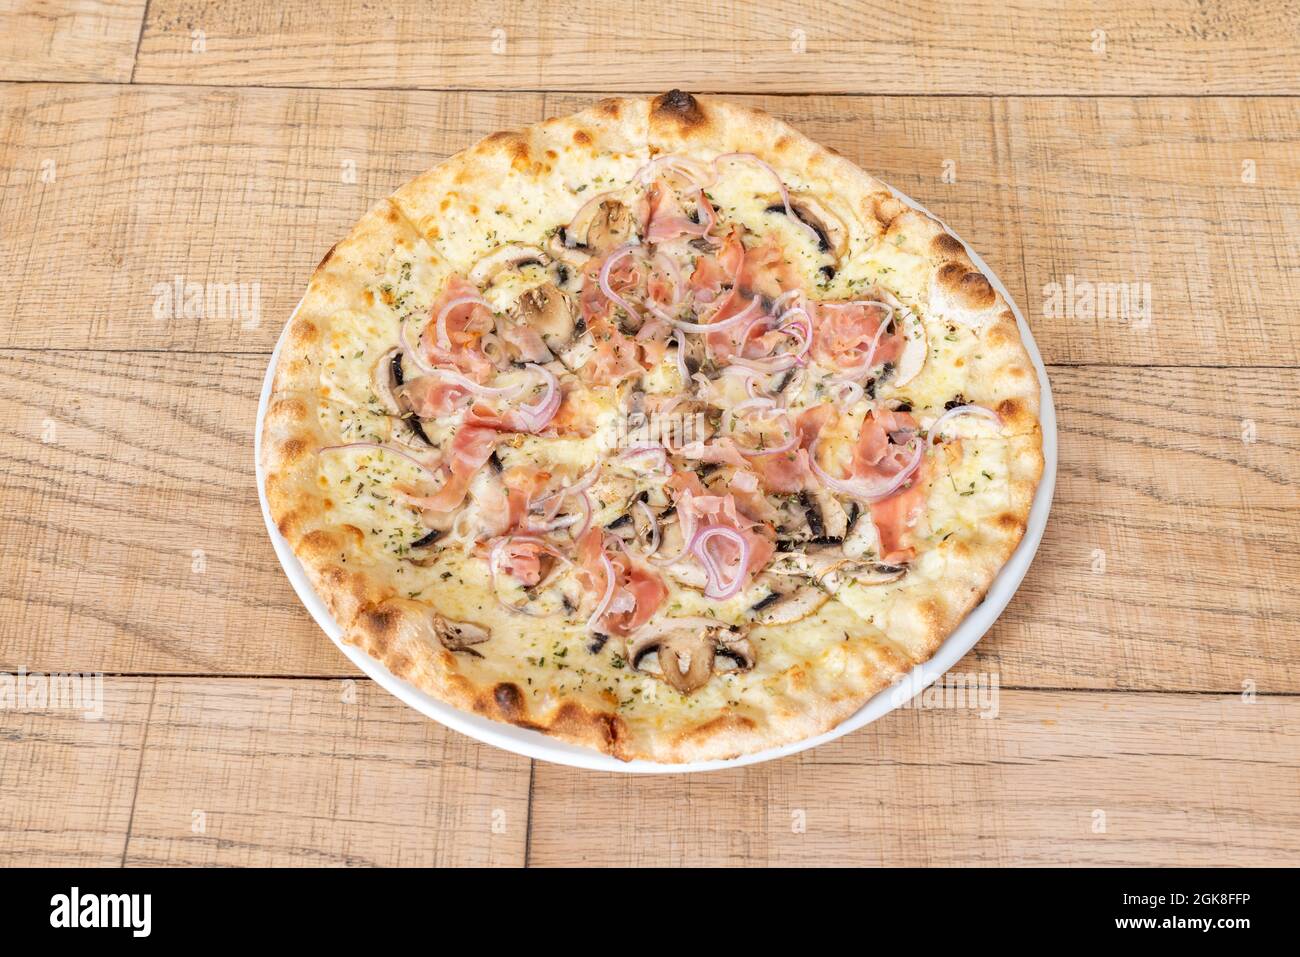 Grande pizza familiale coupée en tranches et cuite avec une recette de carbonara avec oignon rouge, jambon, champignons et fromage fondu Banque D'Images